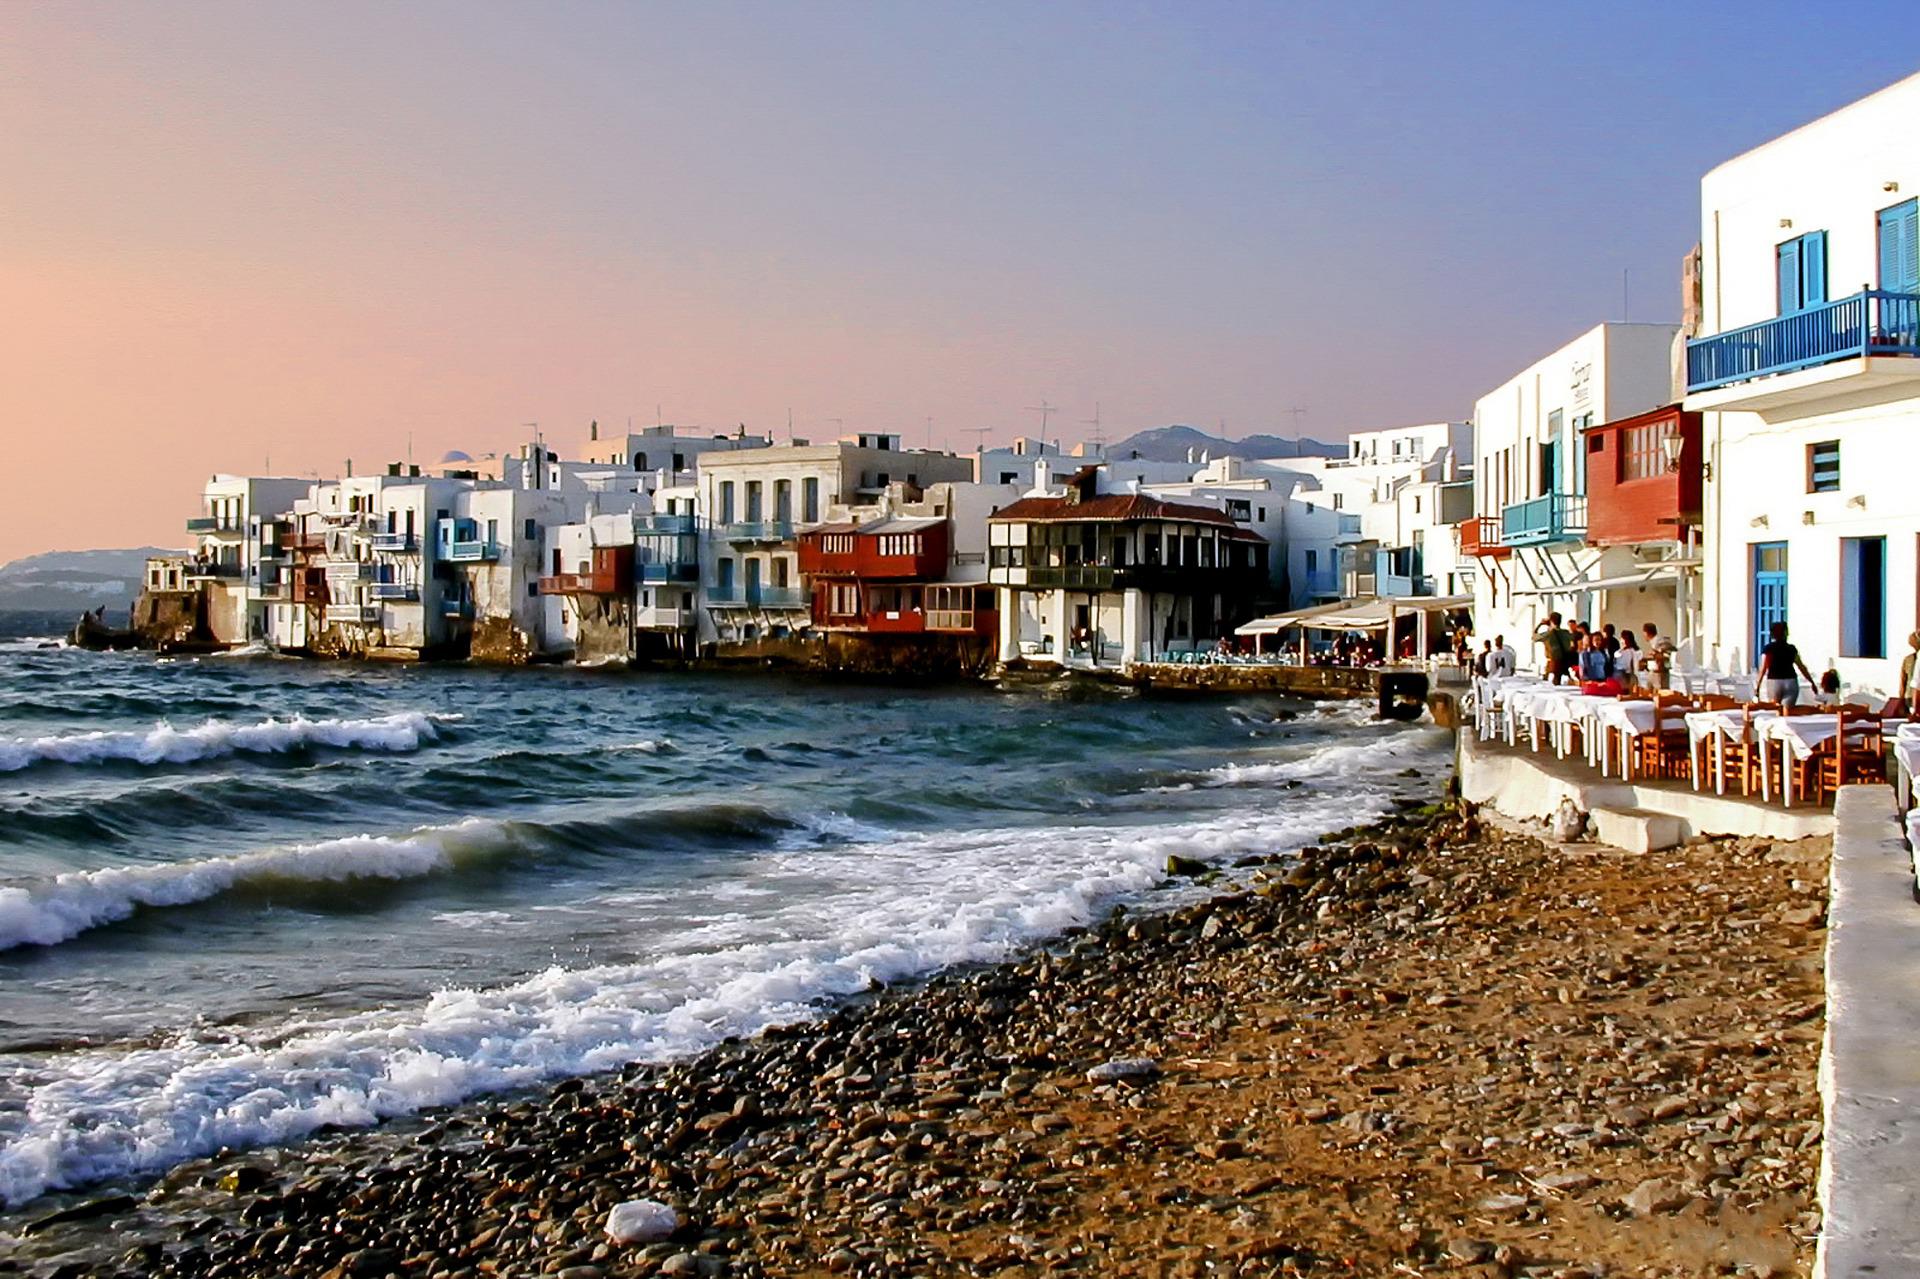 Les 5 îles grecques les plus célèbres du monde - Les 5 îles grecques les plus célèbres du monde